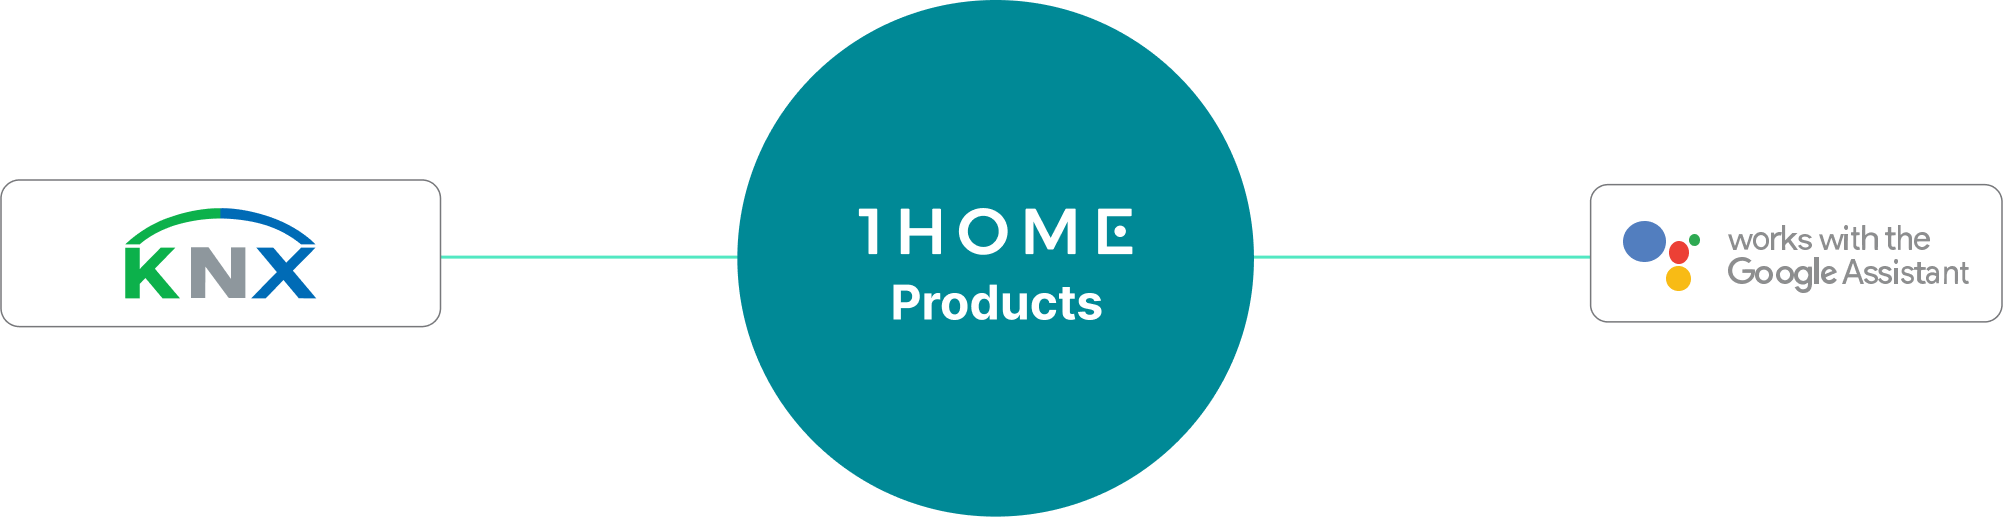 Verbindung von Google Home zu KNX leicht gemacht mit 1Home